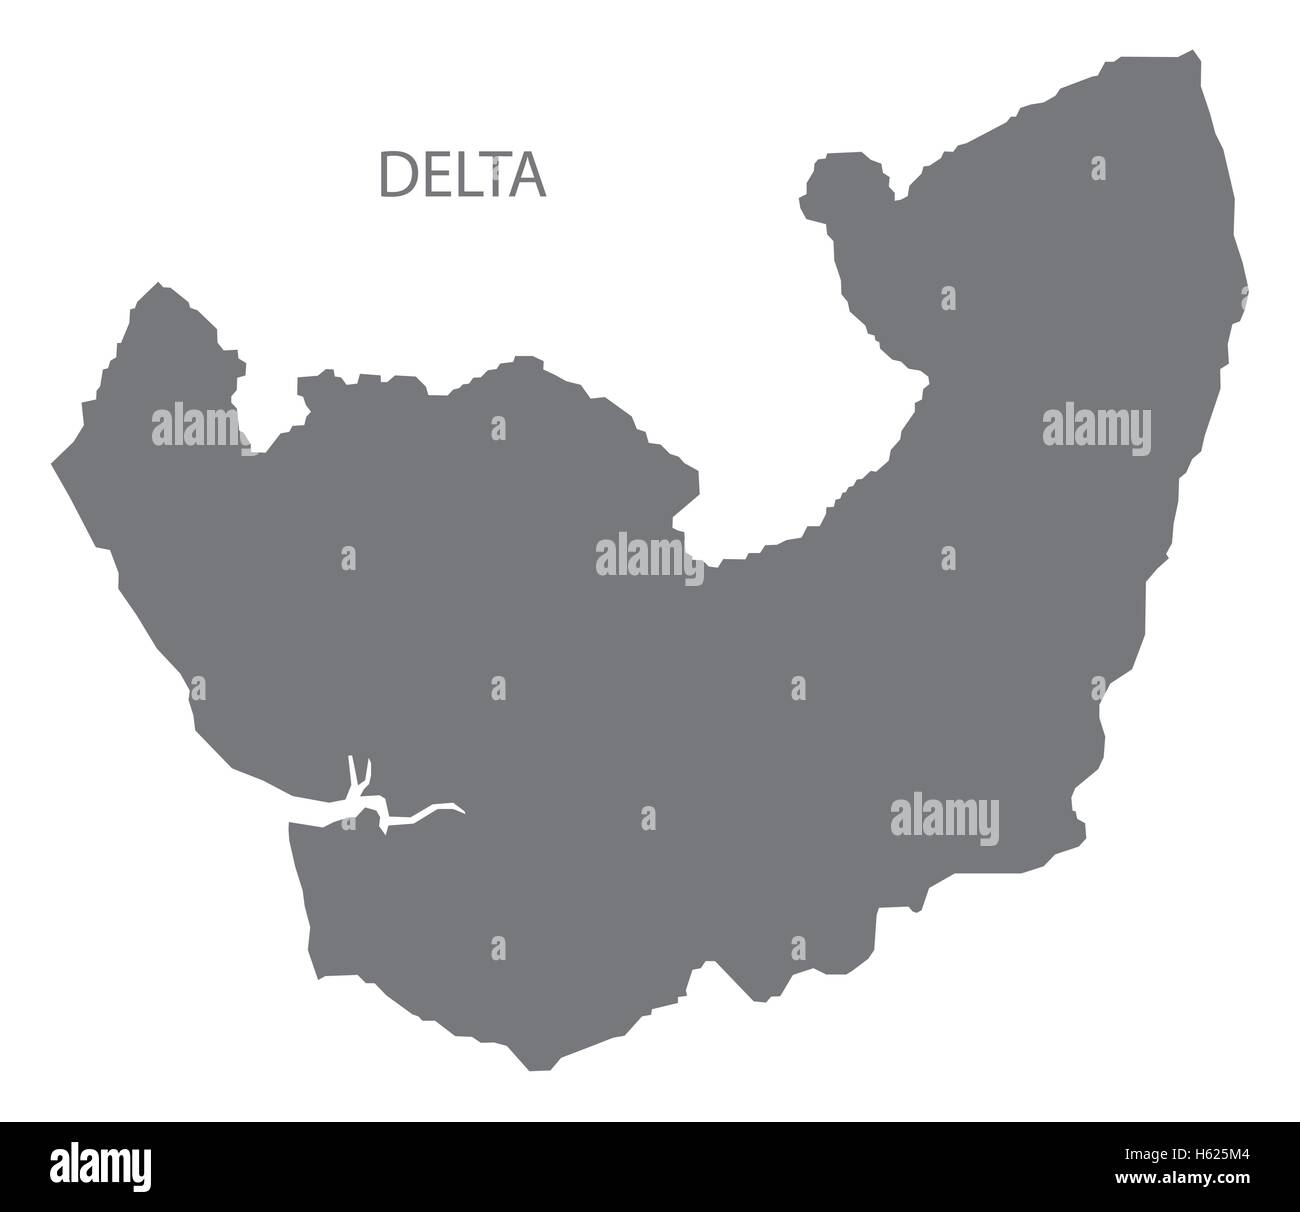 Delta Nigeria Mappa grigio Illustrazione Vettoriale